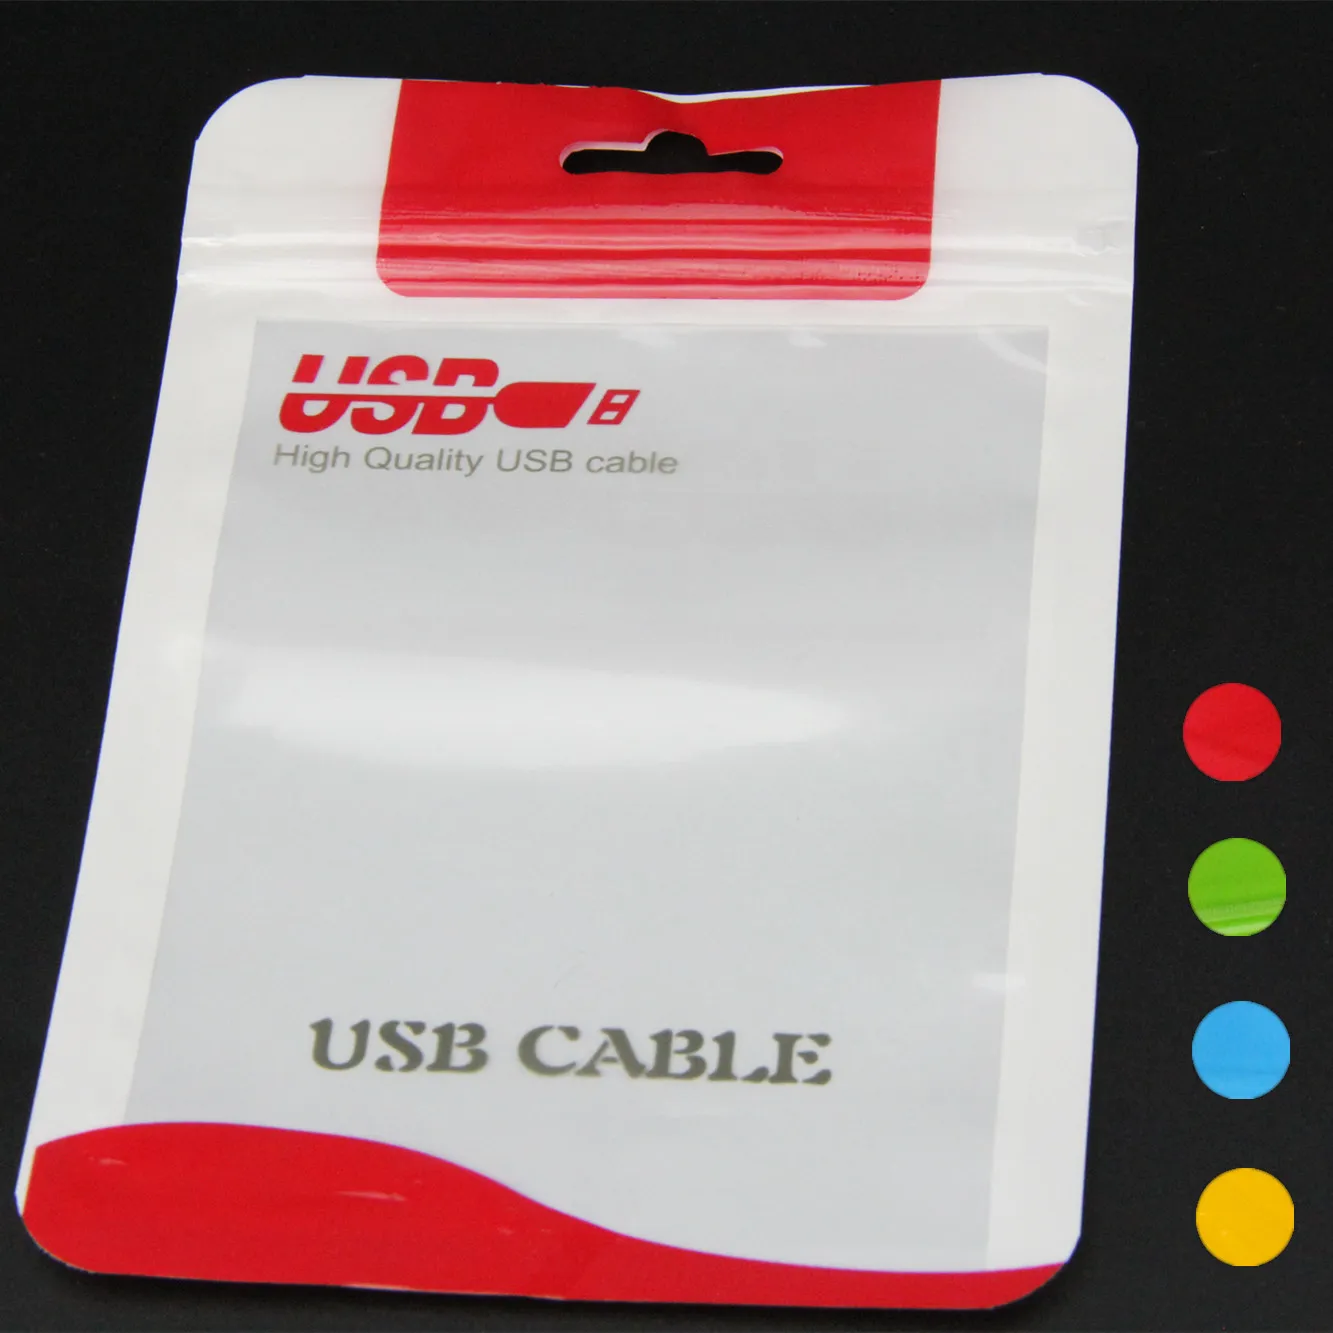 15 * 10.5 14 * 8 см молния пластиковый розничный пакет пакет висящий отверстие полиэтиленовая упаковка для USB кабель Poly OPP упаковочный пакет синий